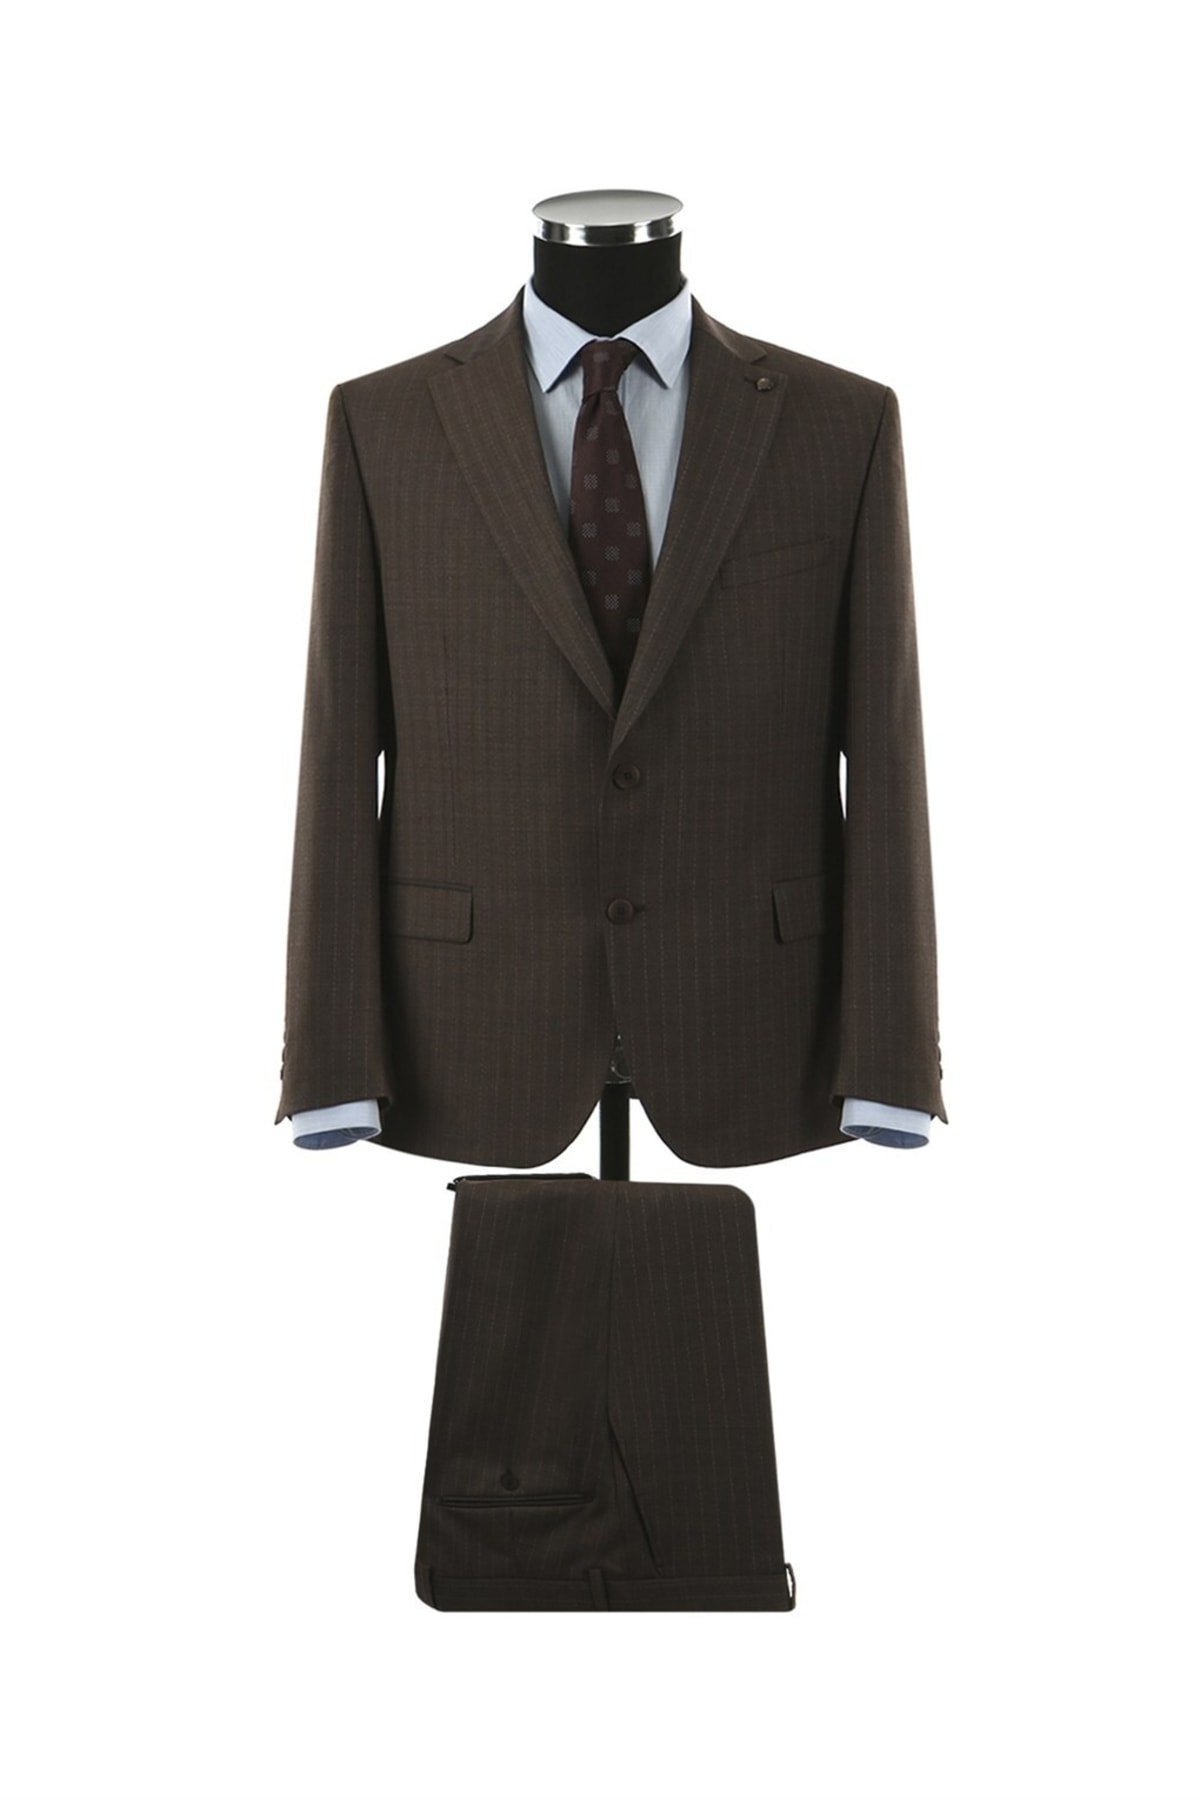 Jakamen Kahverengi Klasik Kalıp Mono Yaka Erkek Takım Elbise